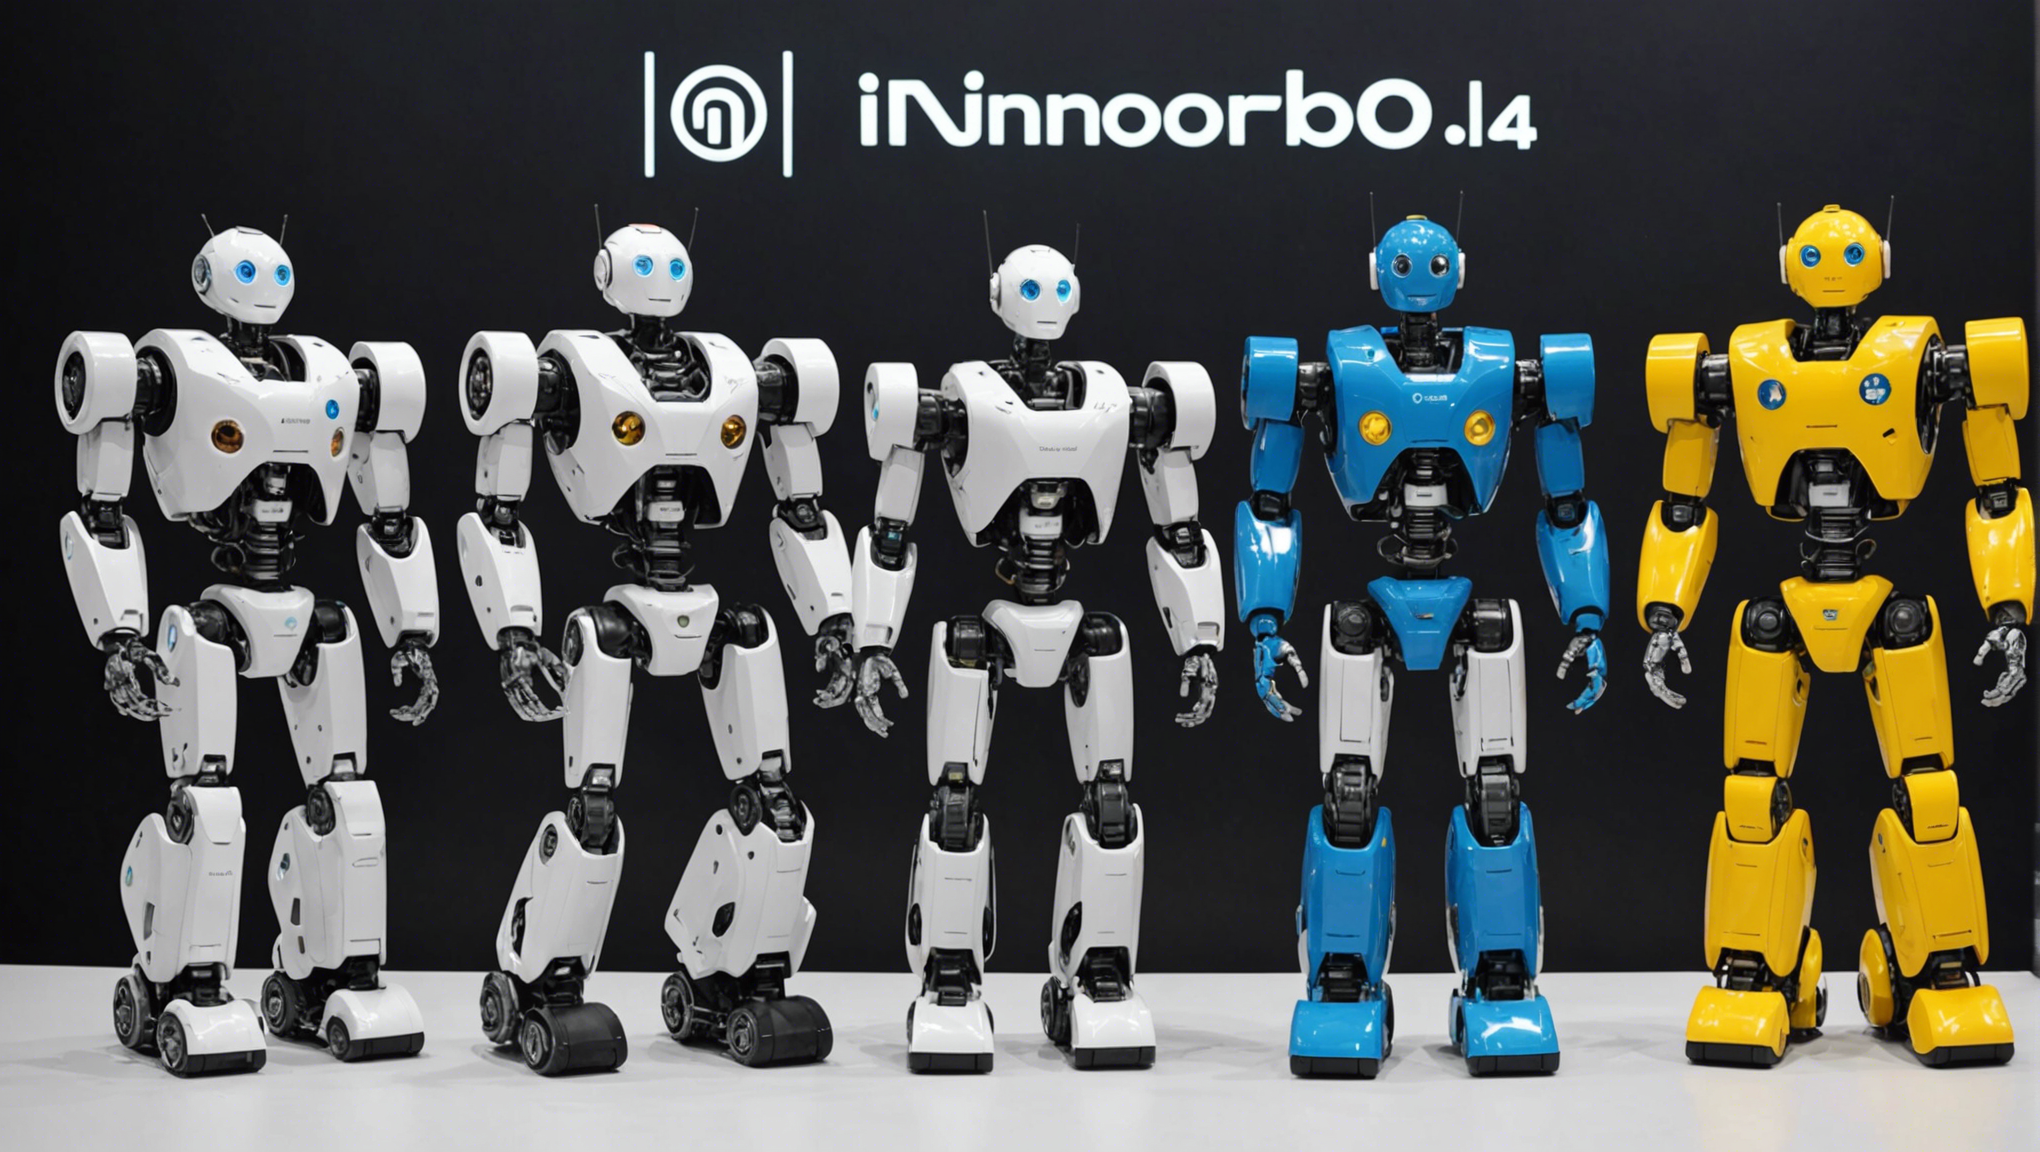 découvrez les incroyables robots de l'innorobo 2014, une révolution technologique à portée de main! venez assister à un événement qui met en lumière les avancées les plus innovantes de la robotique.